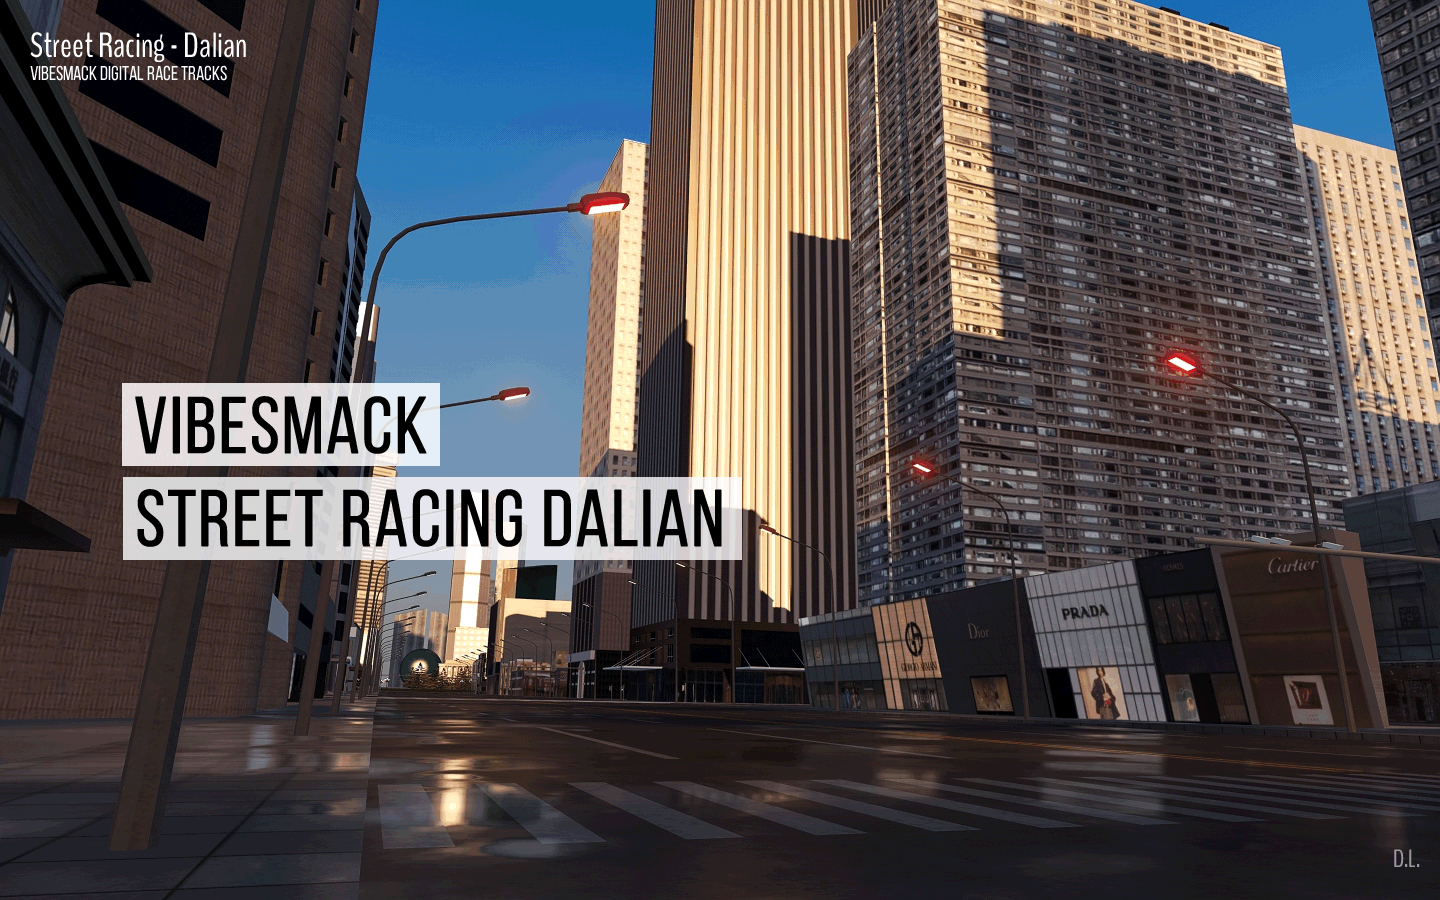 Street Racing - Dalian - Digital Track, VibeSmack D.L.